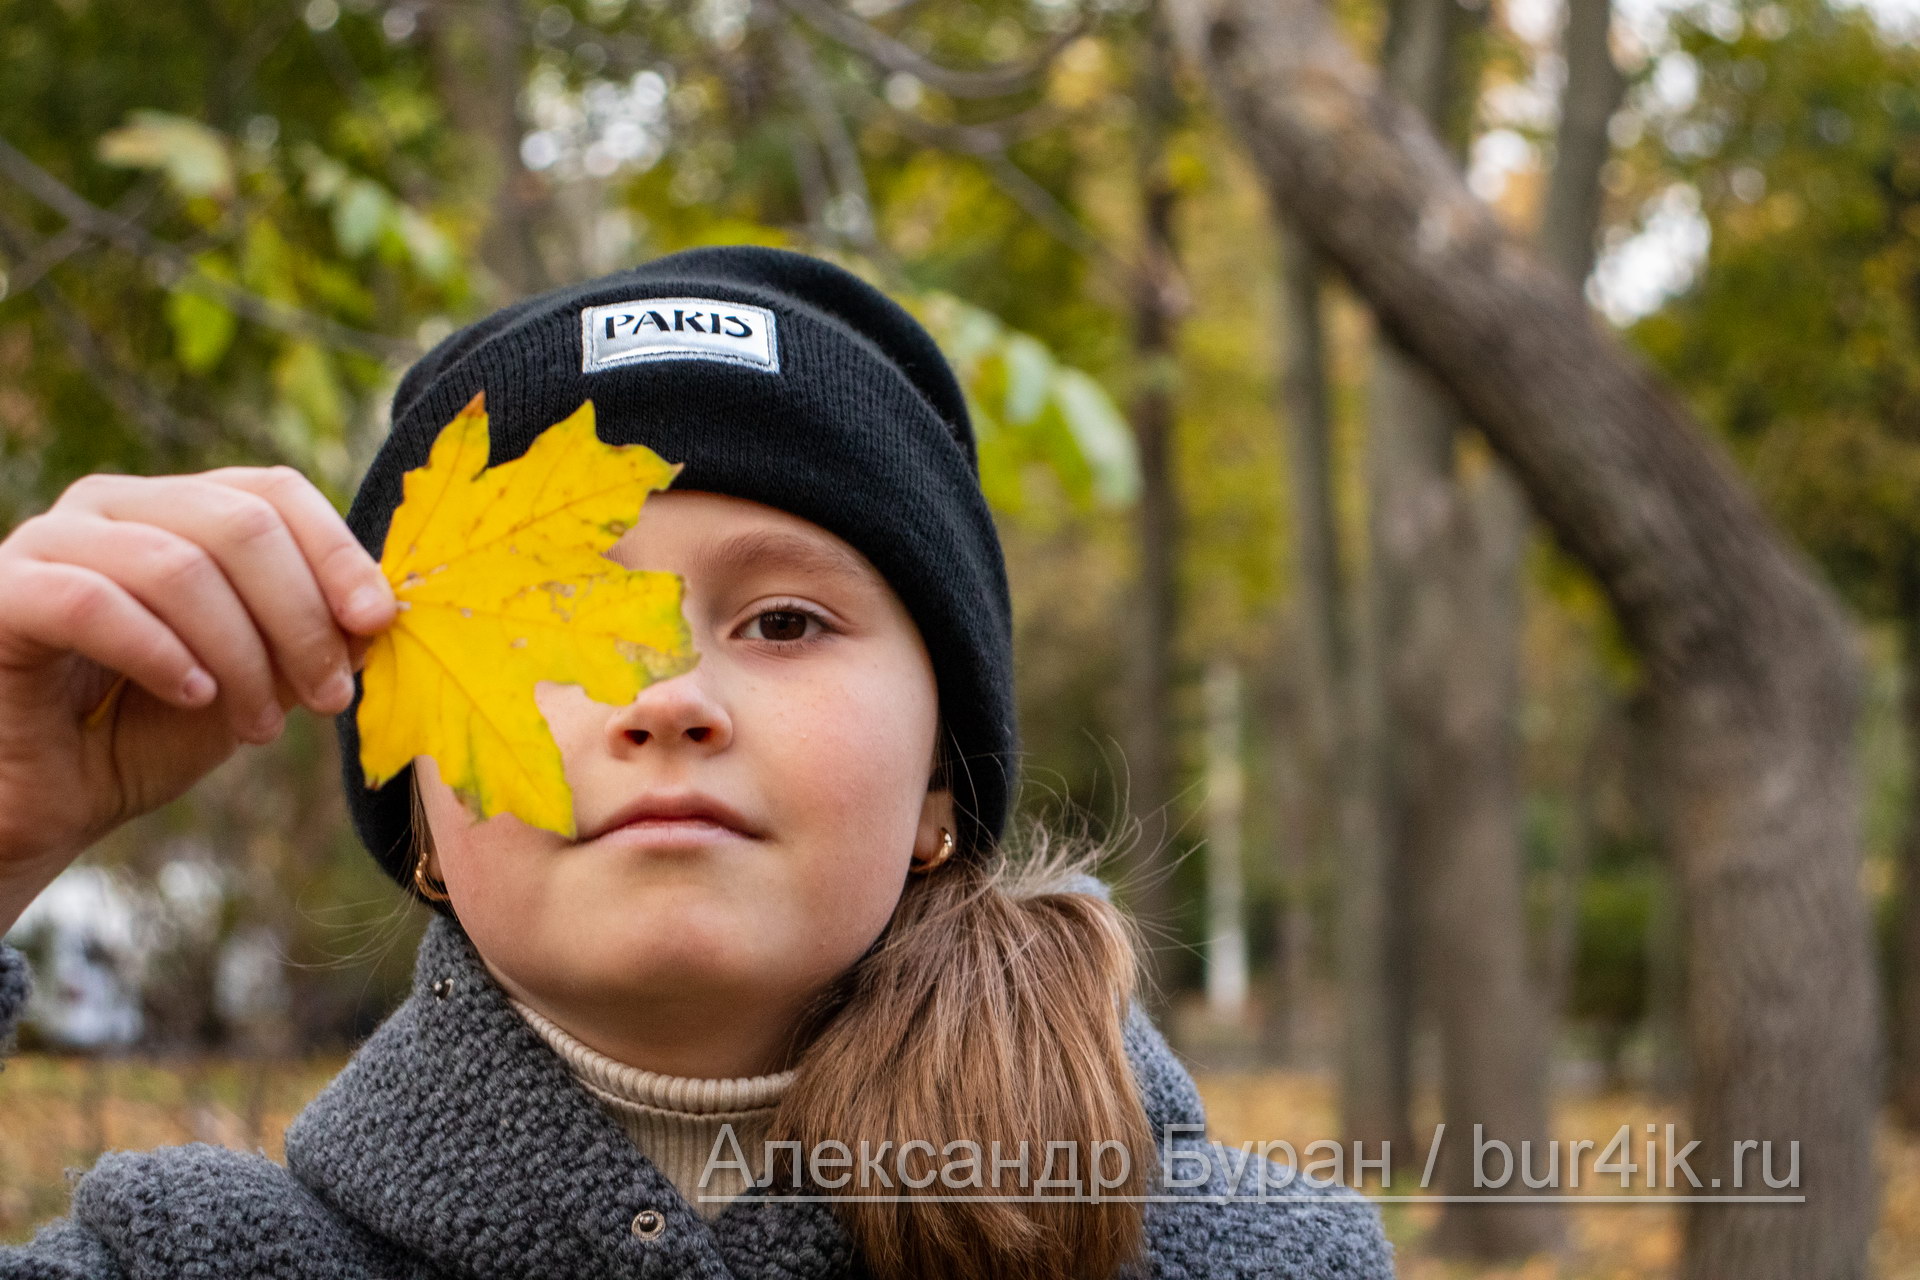 Девочку отвезли в глаза желтый осенний лист в парке - Украина, Одесса, 09,11,2019